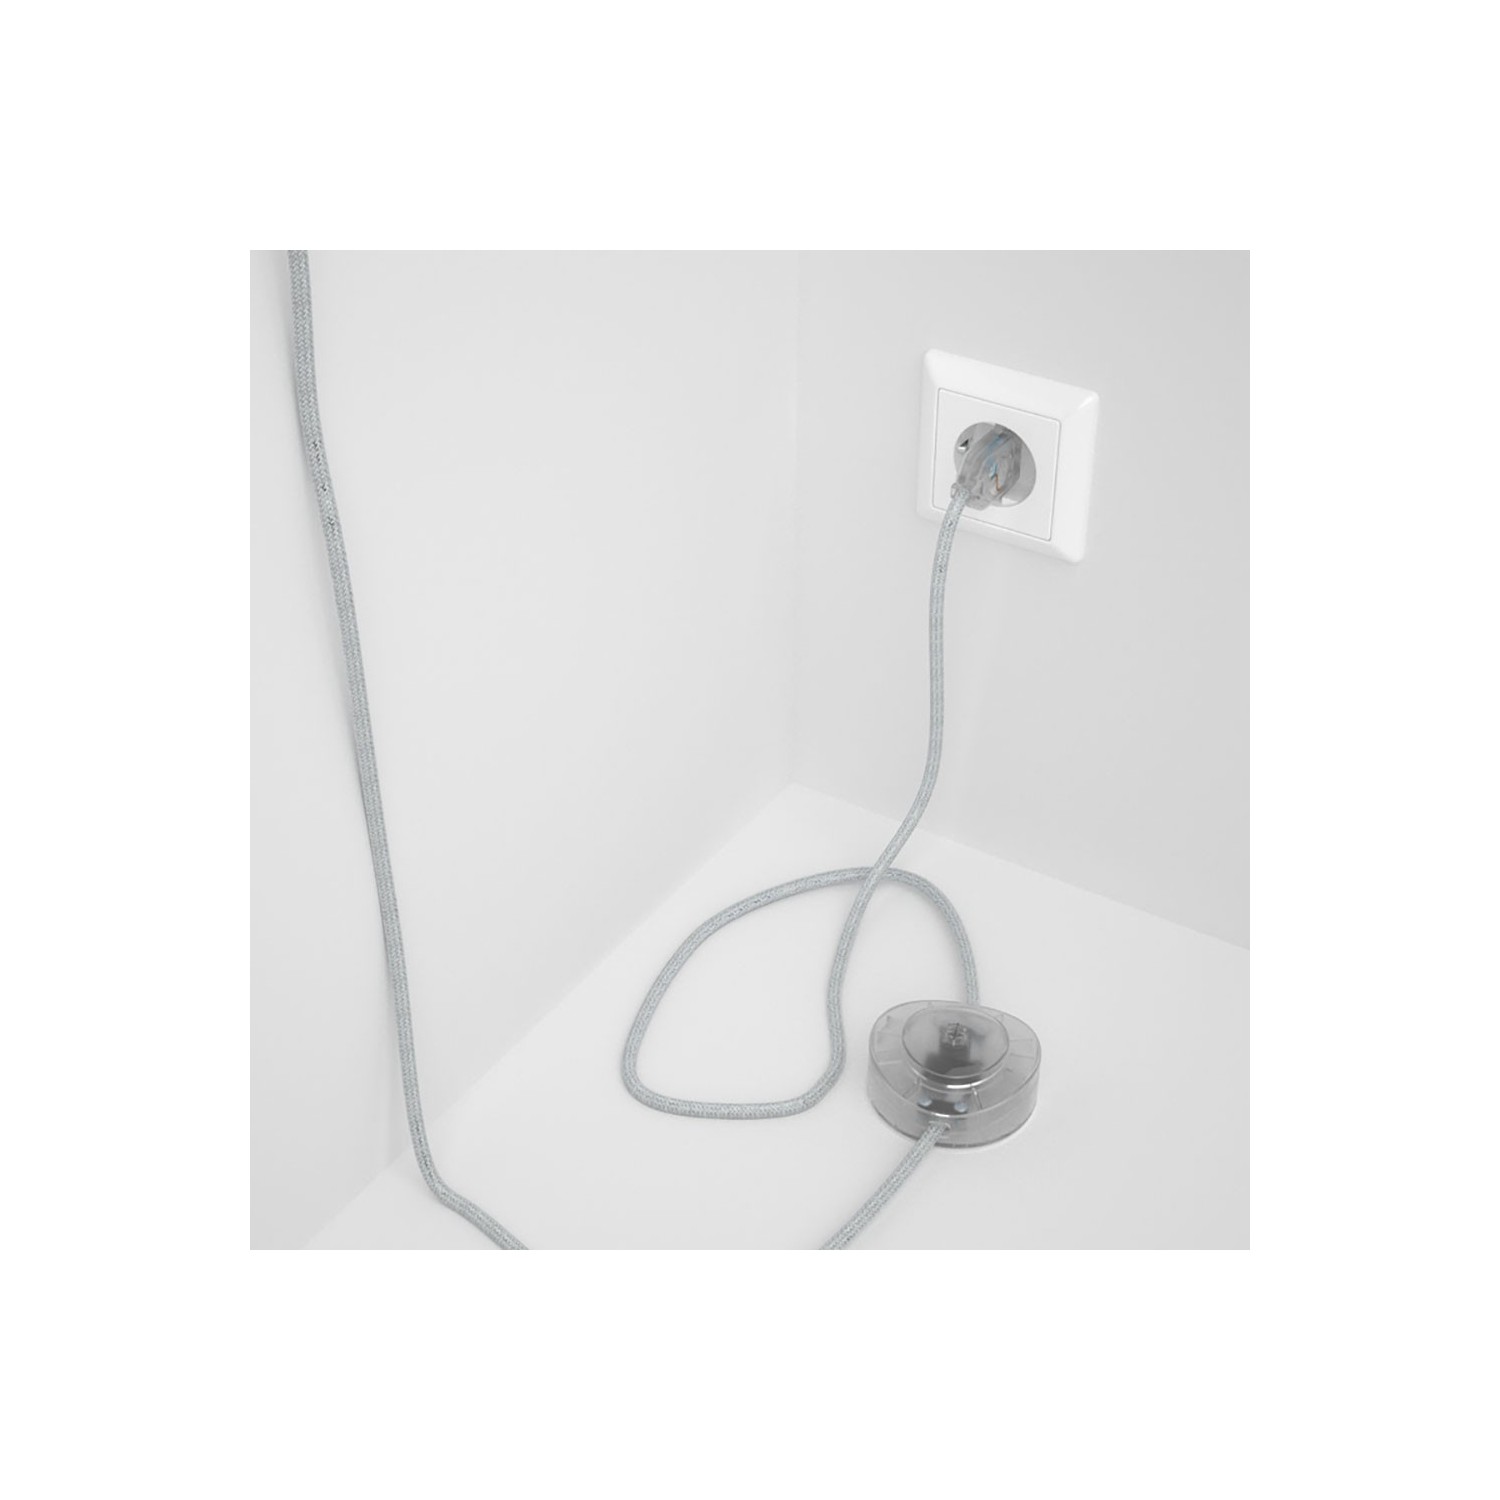 Cableado para lámpara de pie, cable RL01 Efecto Seda Glitter Blanco 3 m. Elige tu el color de la clavija y del interruptor!